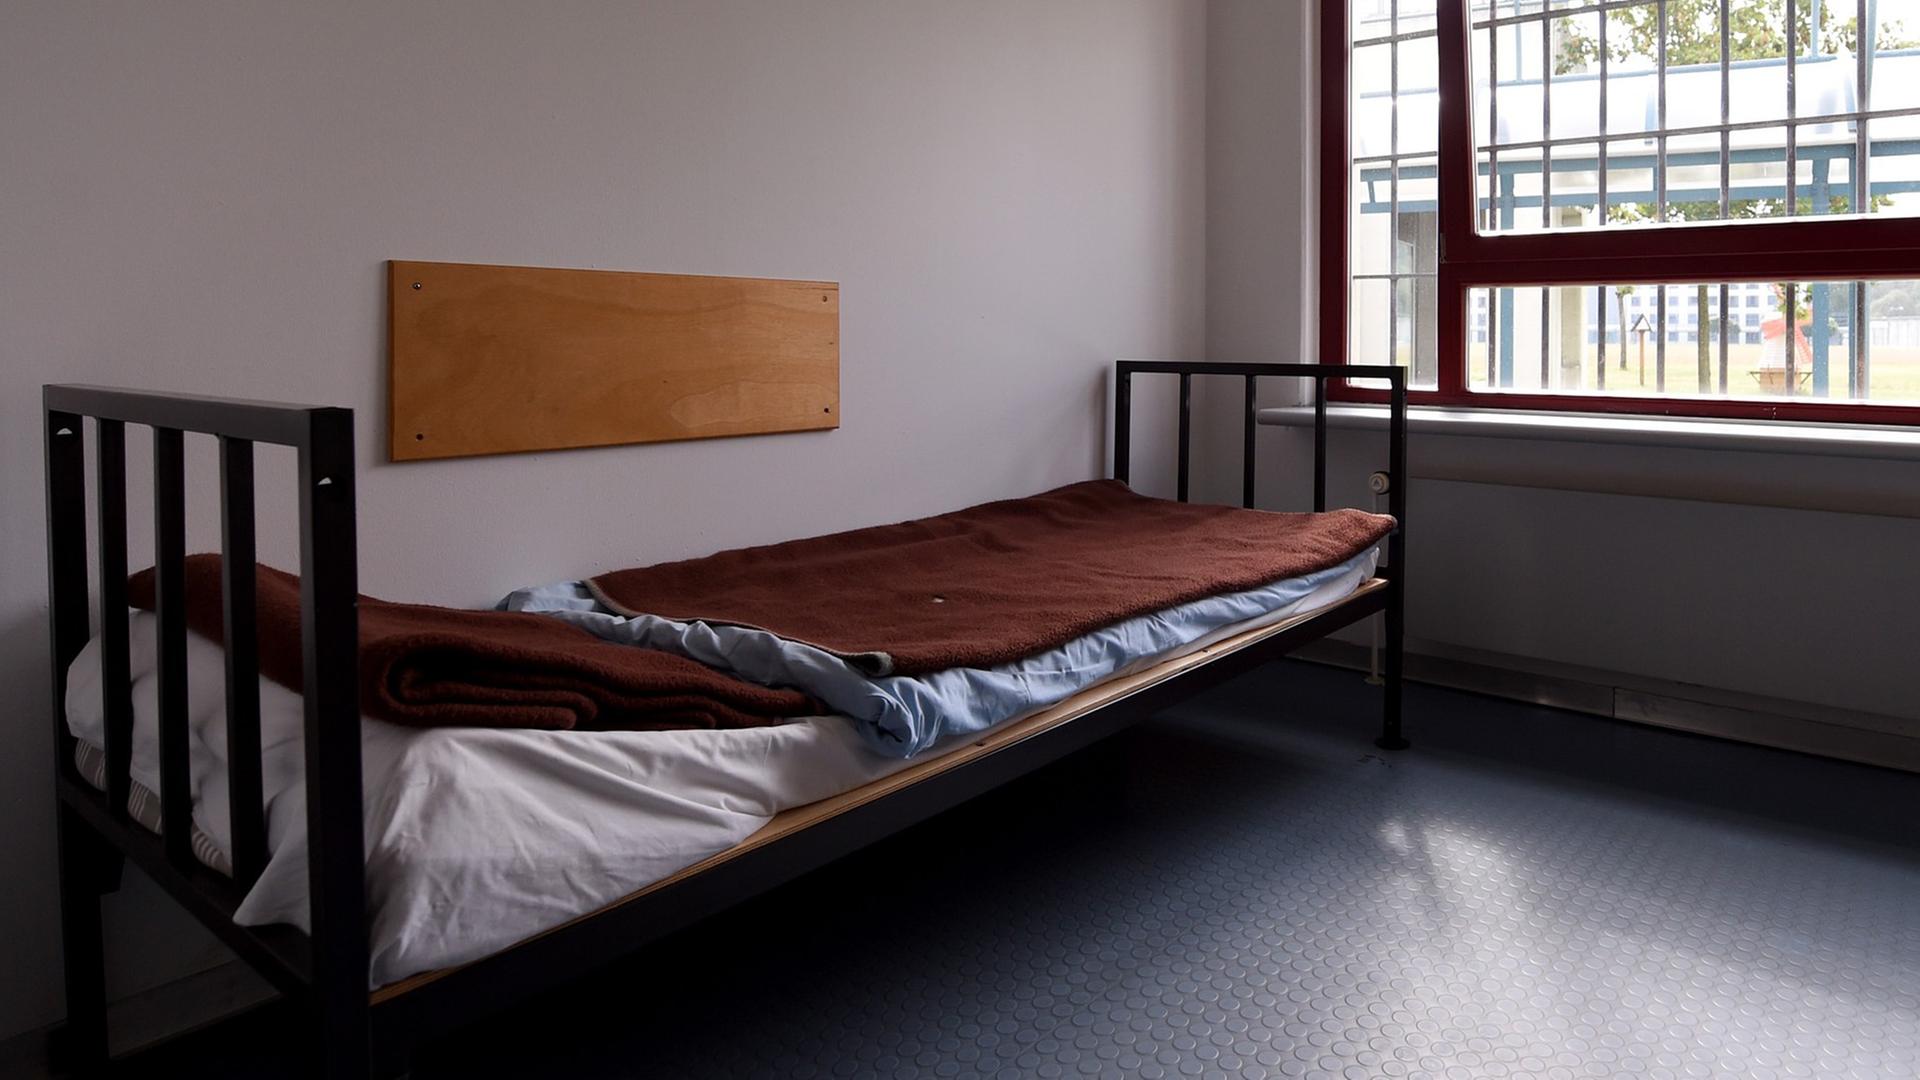 Eine unbewohnte Zelle in der Justizvollzugsanstalt Gelsenkirchen (Nordrhein-Westfalen), aufgenommen am 28.07.2014. Foto: Marius Becker/dpa